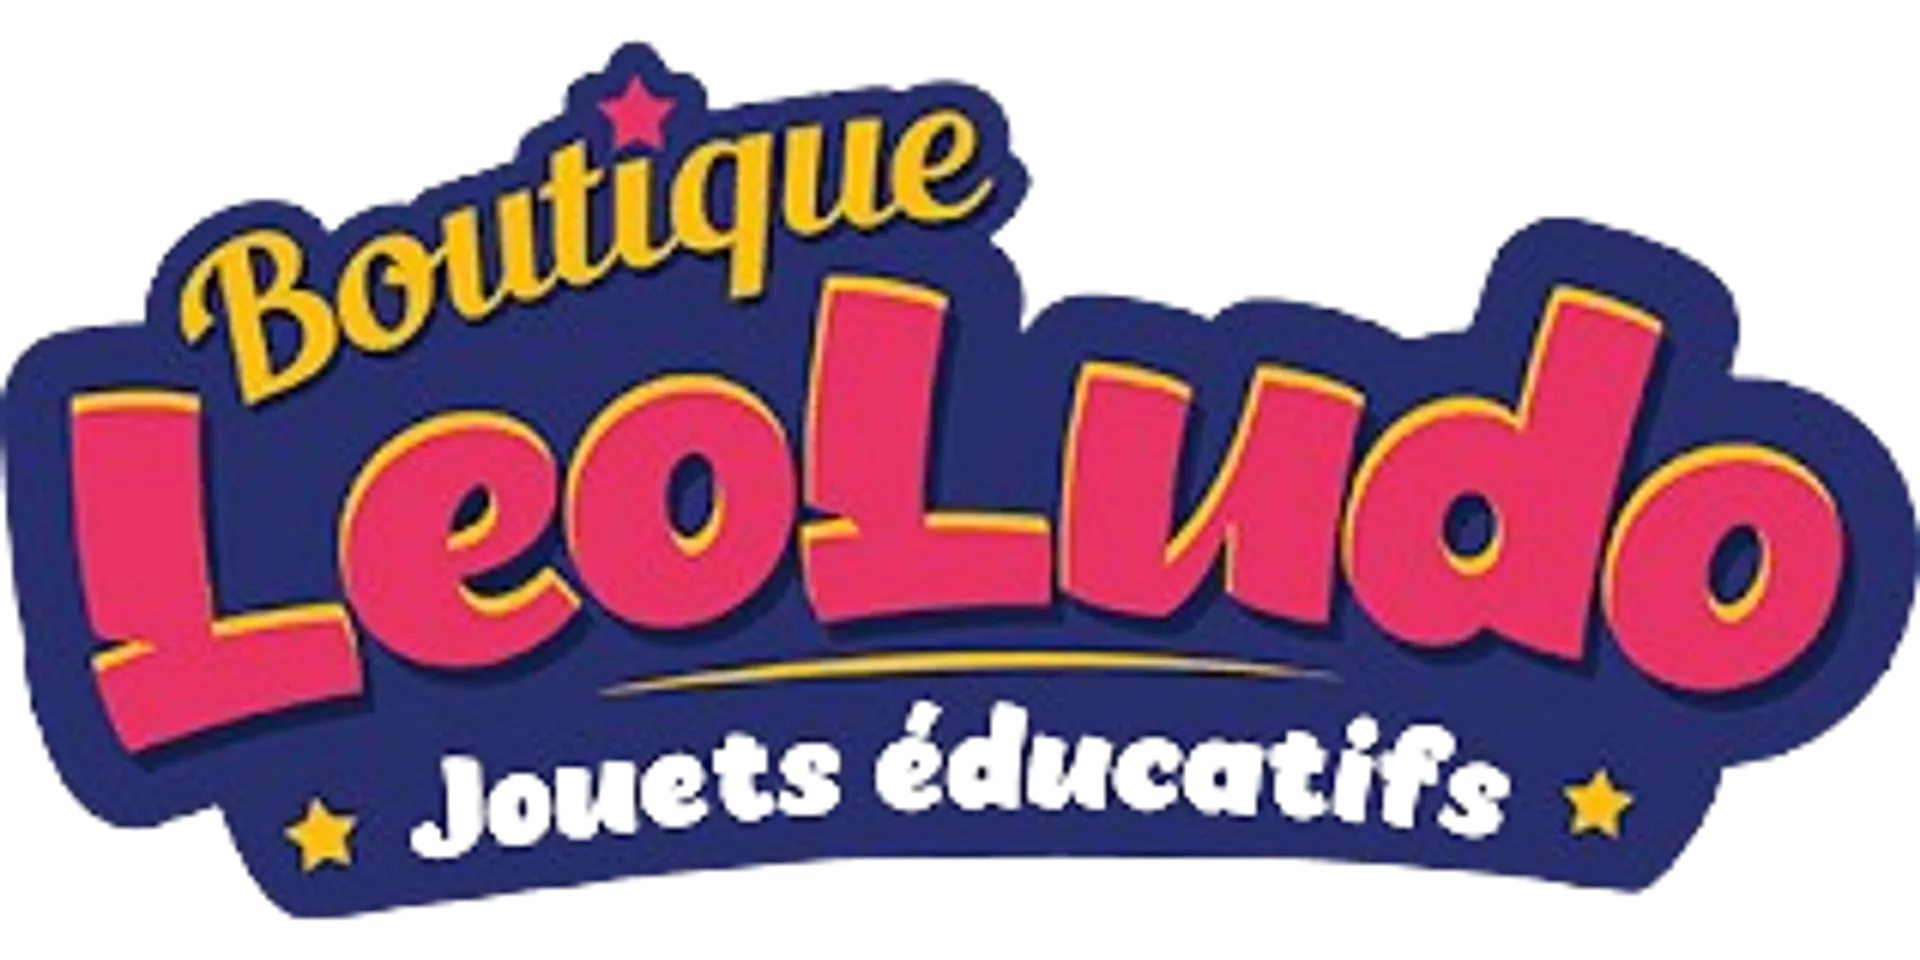 BOUTIQUE LEOLUDO logo de circulaires